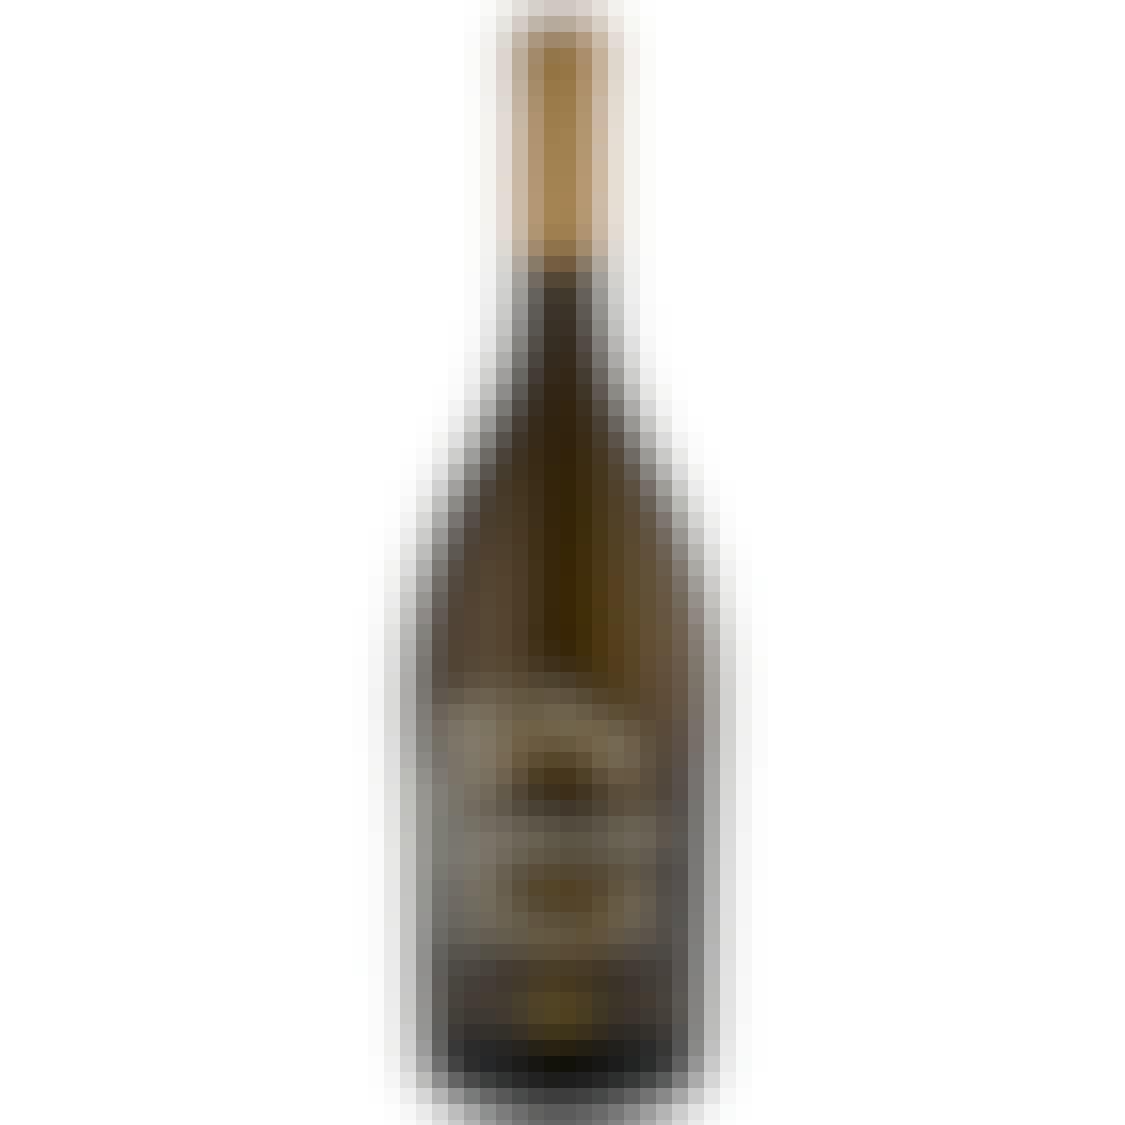 Emblem Carneros Chardonnay 750ml